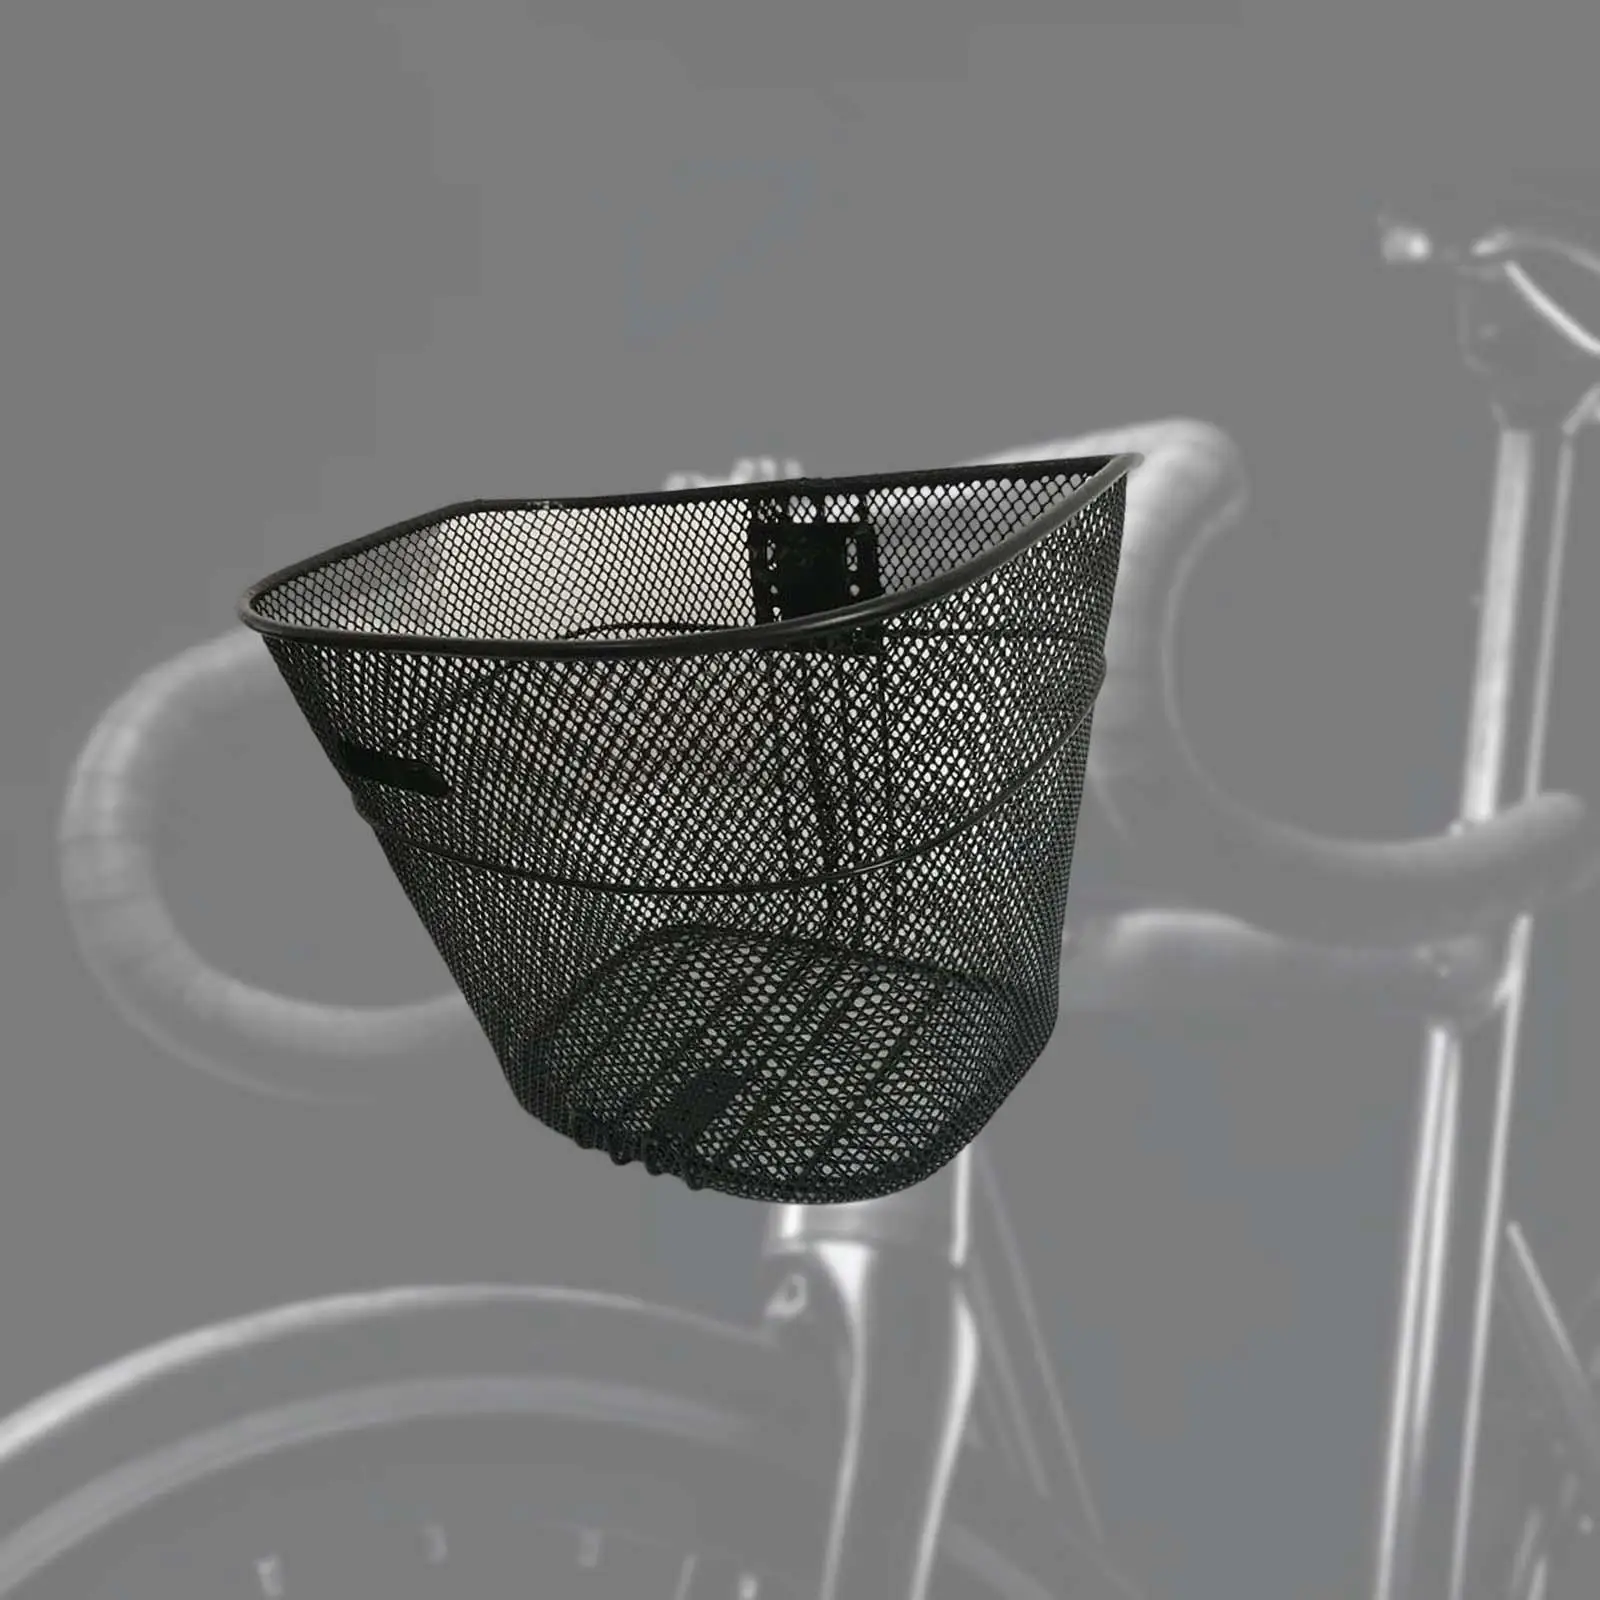 Bike Basket Removable Sundries Container Front Handlebar Basket Bike Front Basket for Riding